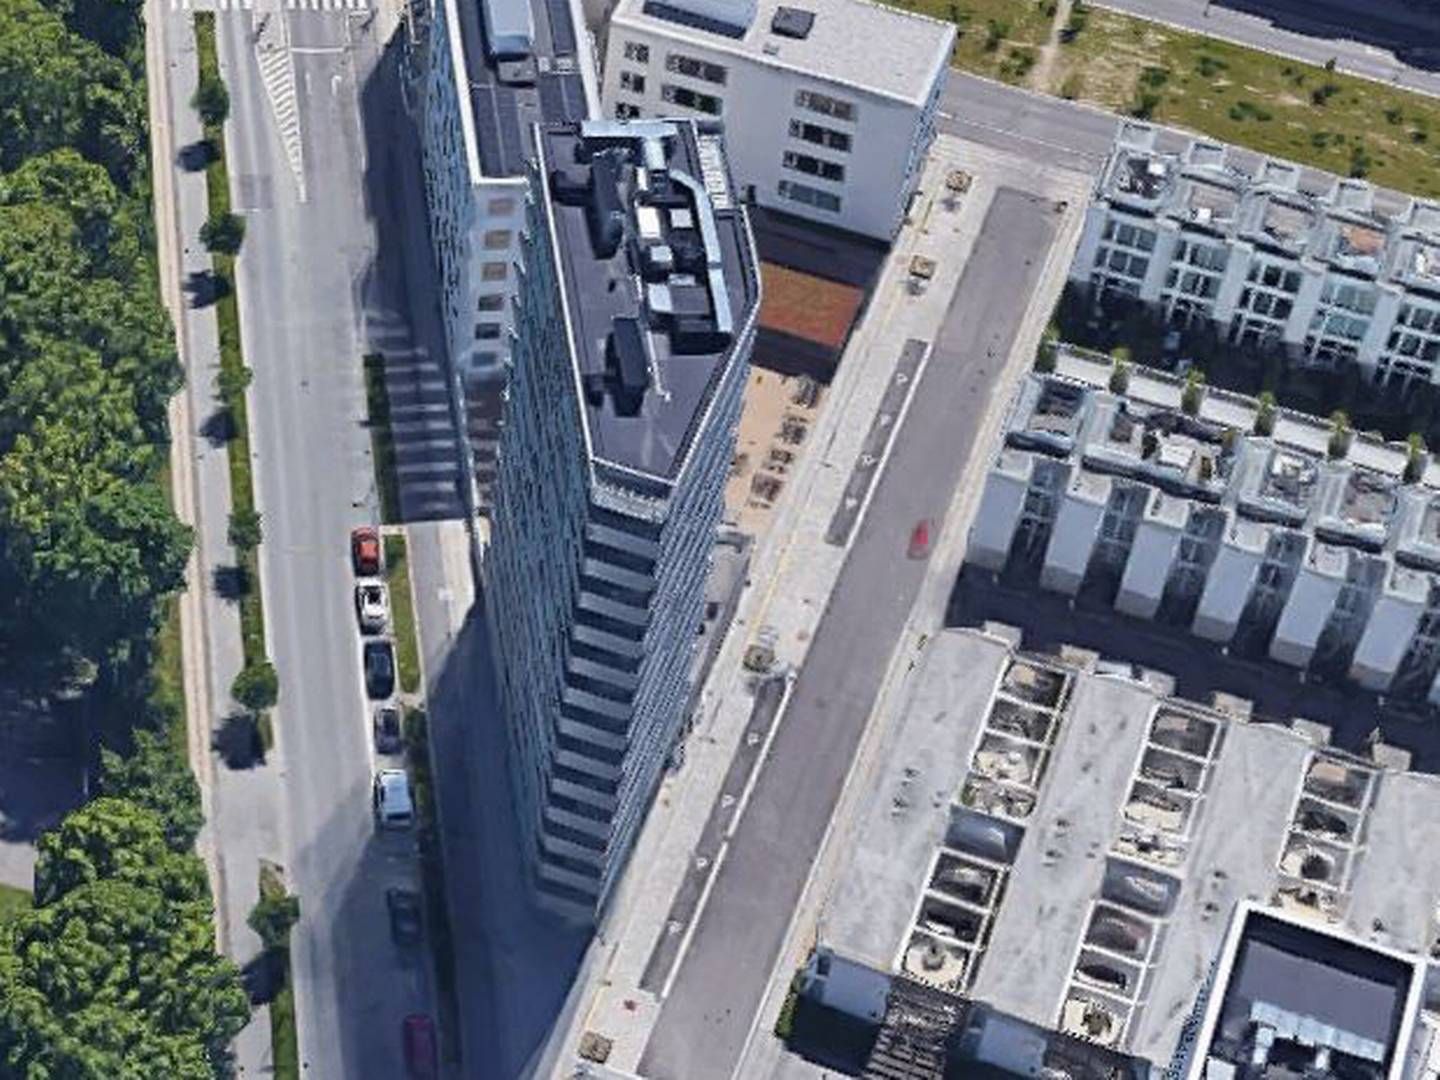 GSA Ejendomme, som står bag projektudvikleren Walls, har siden 2010 drevet Stay-konceptet i den karakteristiske bygning på Islands Brygge, der tidligere blev benyttet som fabriksejendom, og som gik under navnet A-huset pga. sin karakteristiske form. | Foto: Google Maps